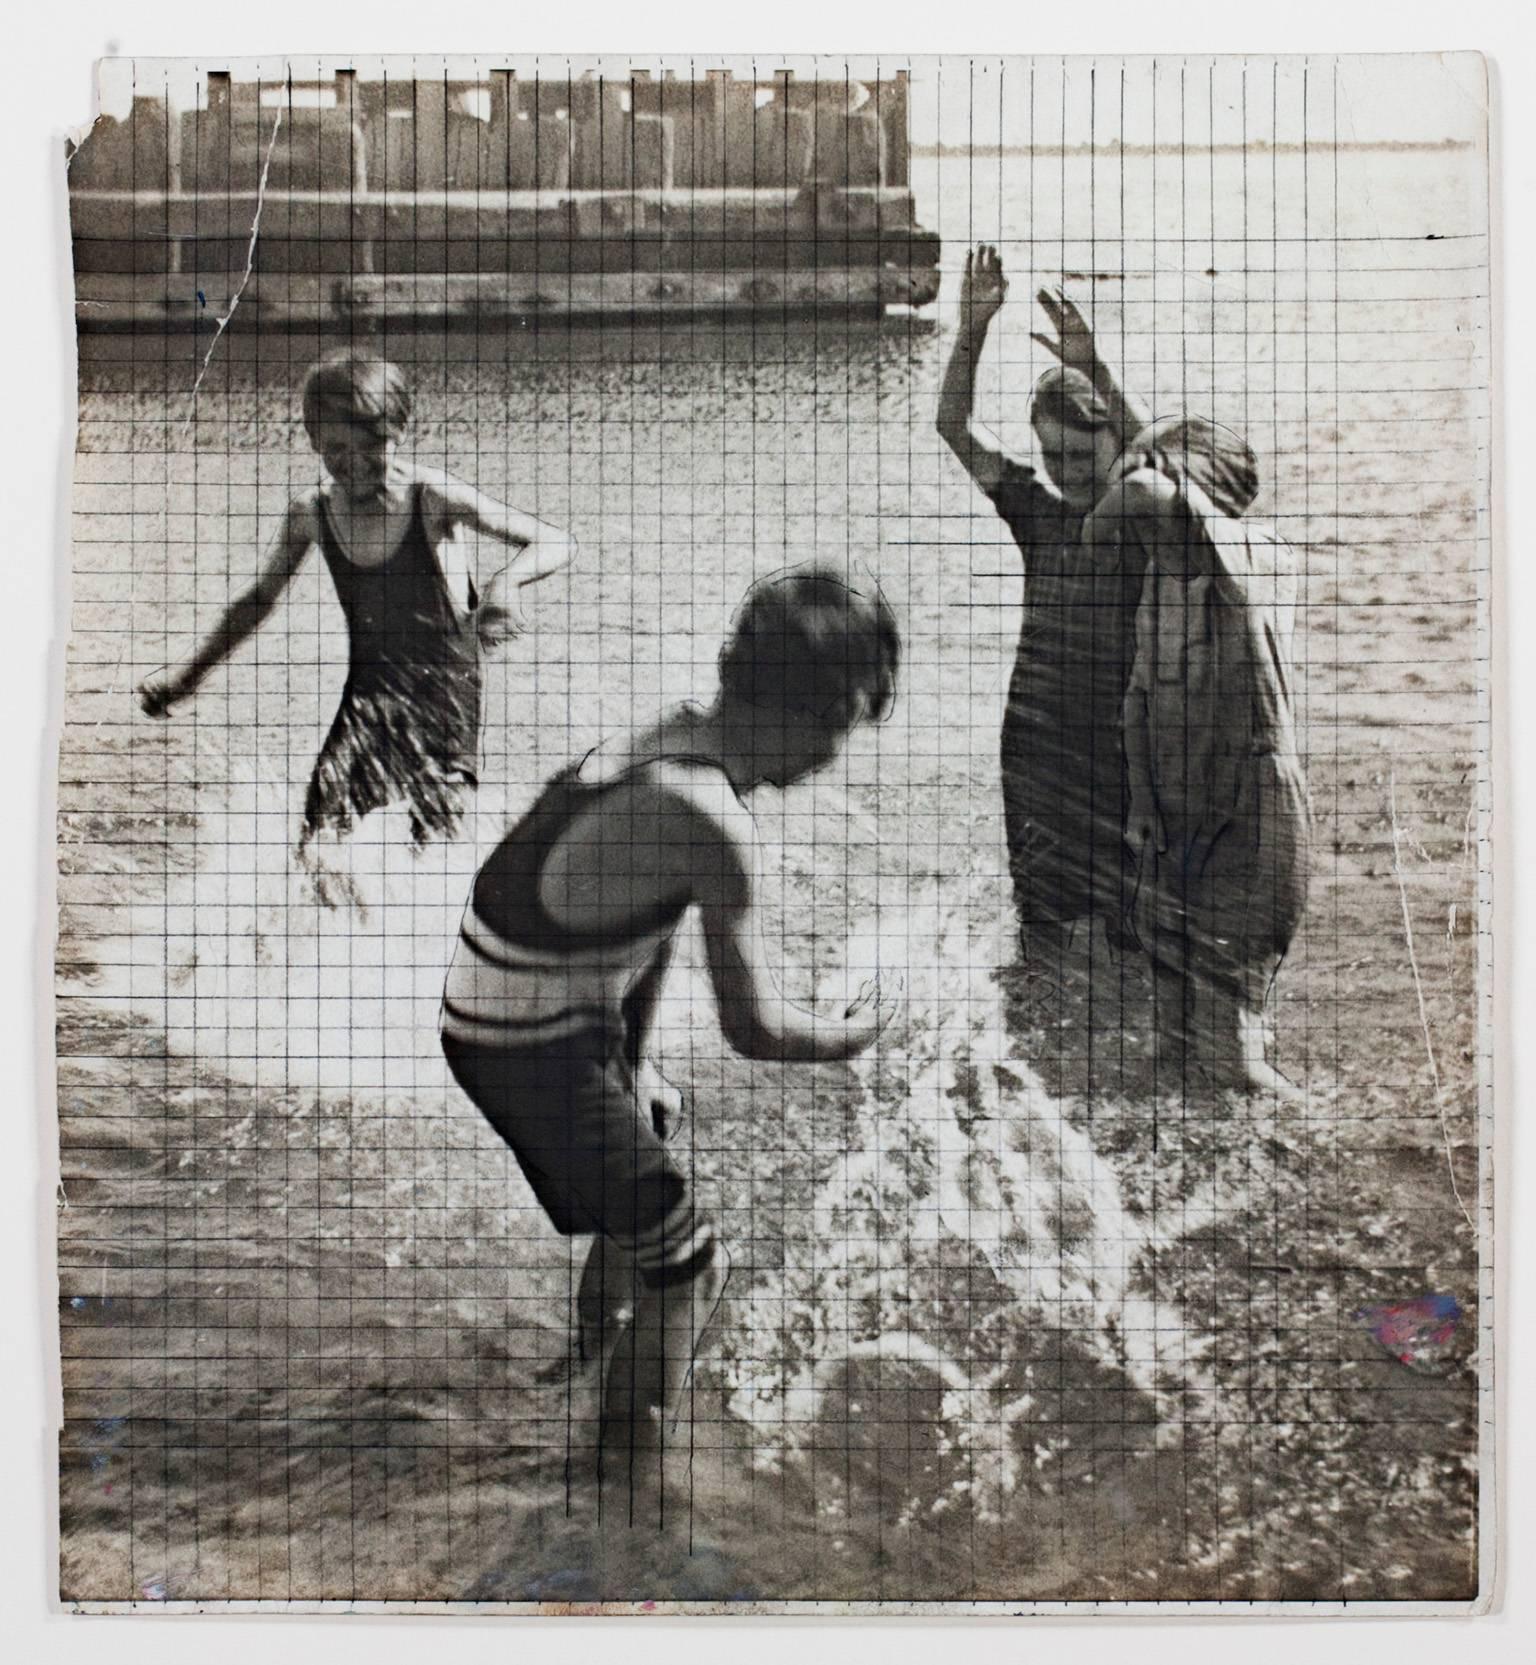 Figurative Photograph Francesco Spicuzza - "Children Playing in Water-Lake Michigan (The Splash)" (Les enfants jouant au lac de l'eau), photo en gélatine de siècle 